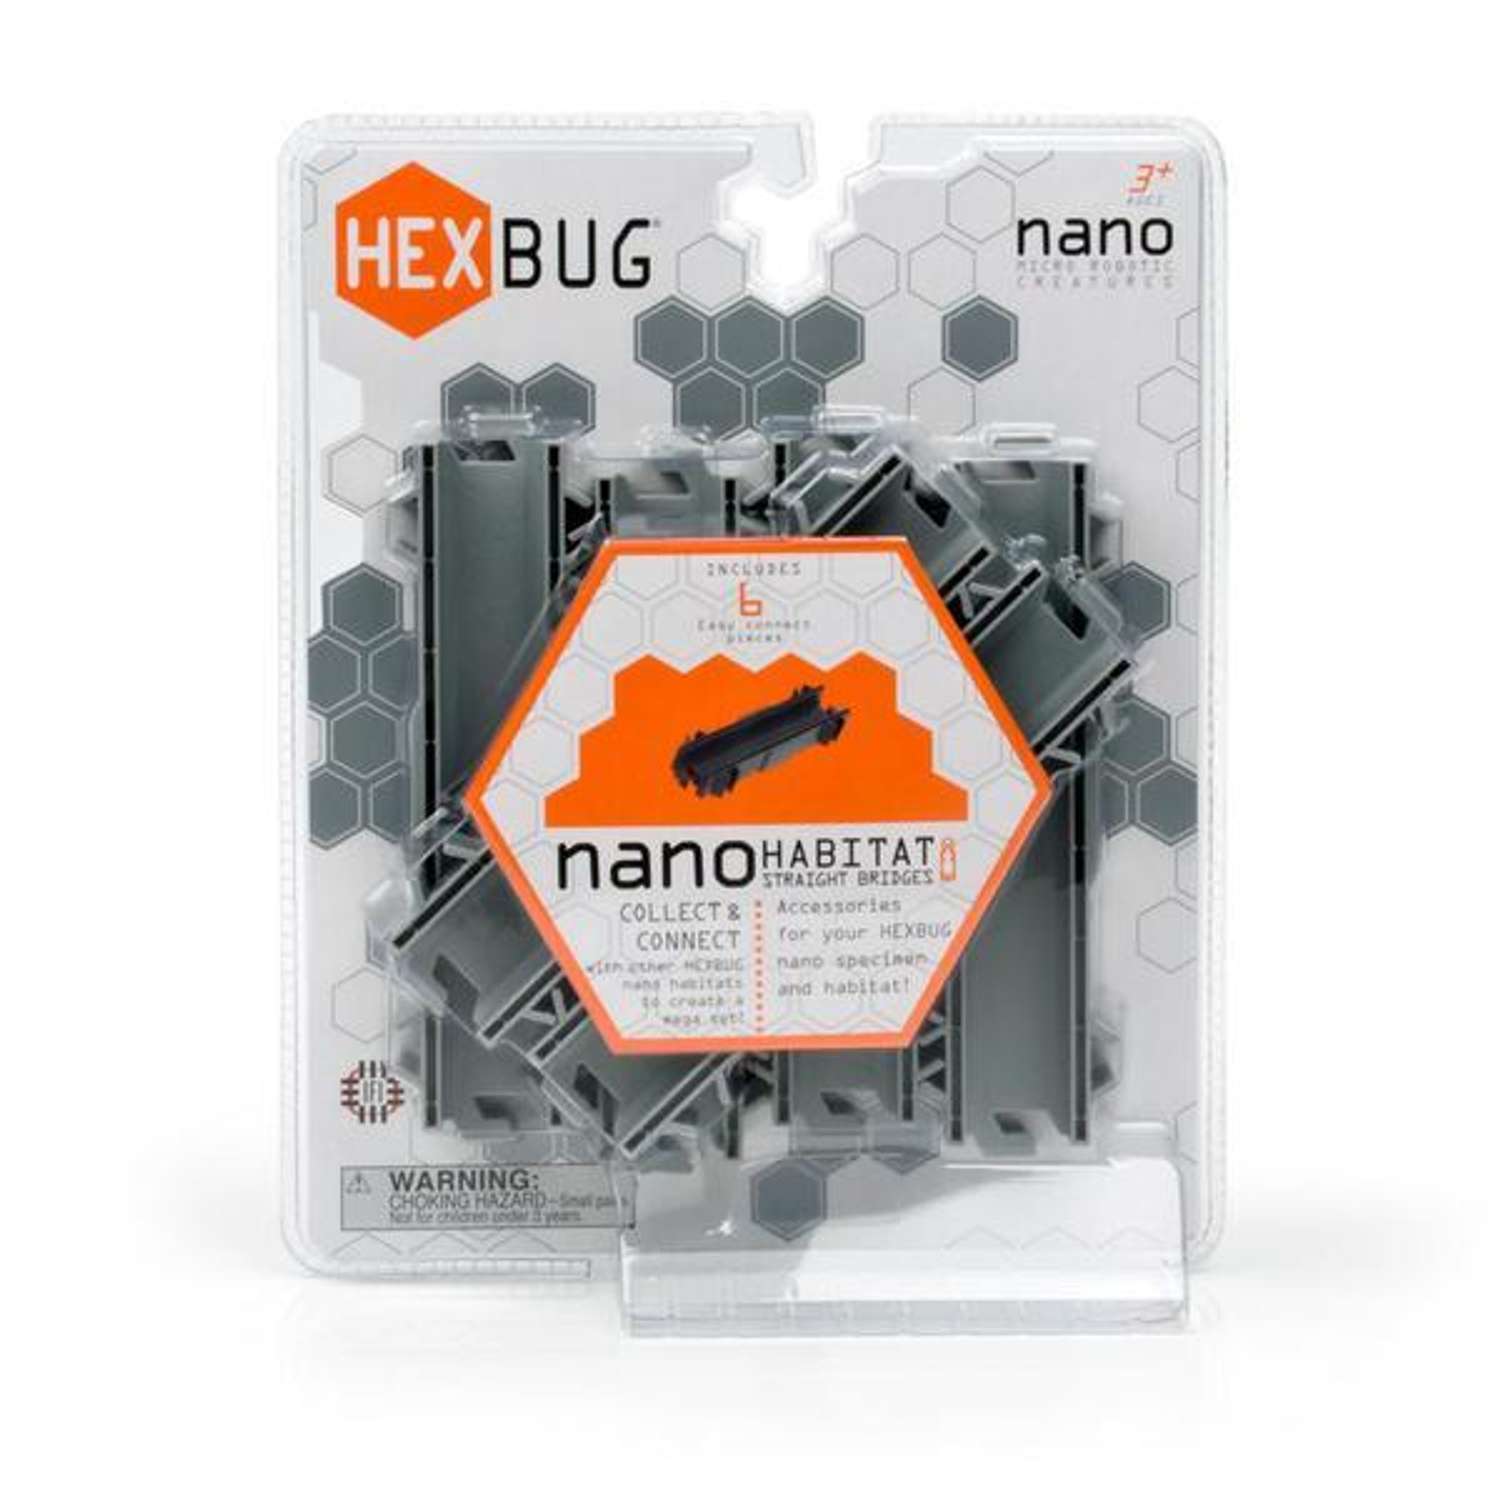 Набор для нанодрома Hexbug Nano Straight Track (6 прямых элементов) 477-1442 - фото 2